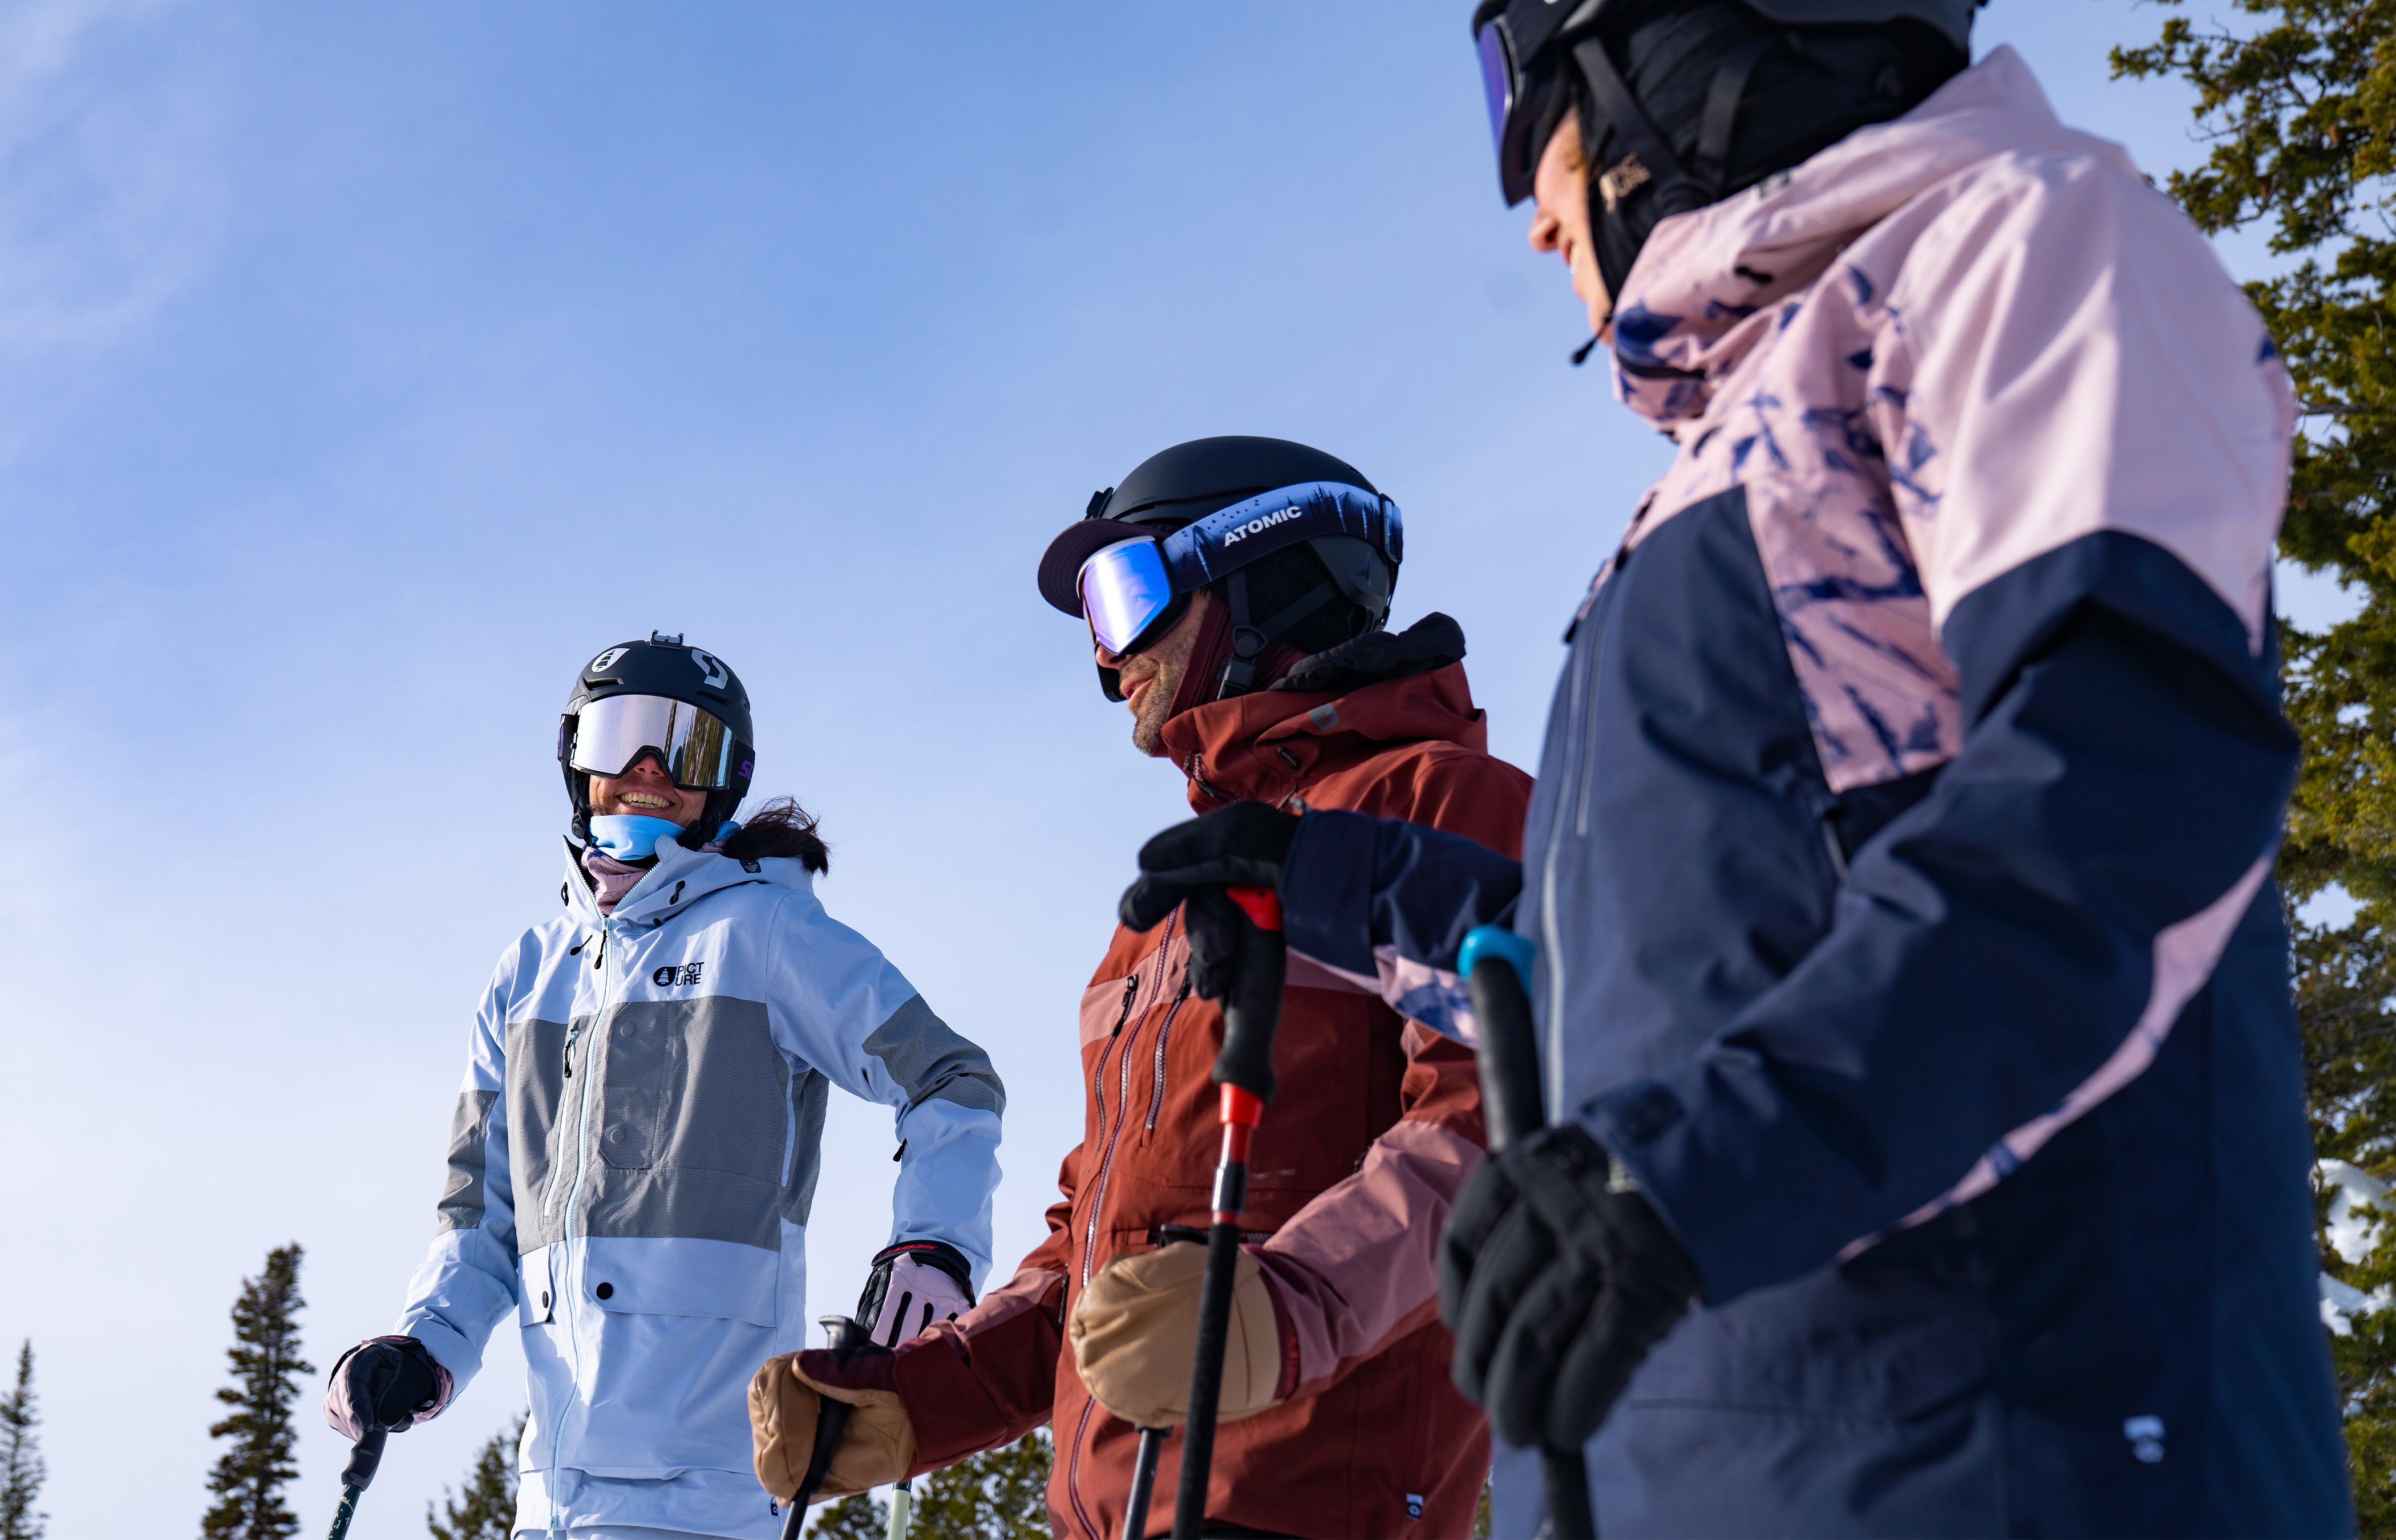 Spyder: manteaux et vêtements de ski pour homme et femme